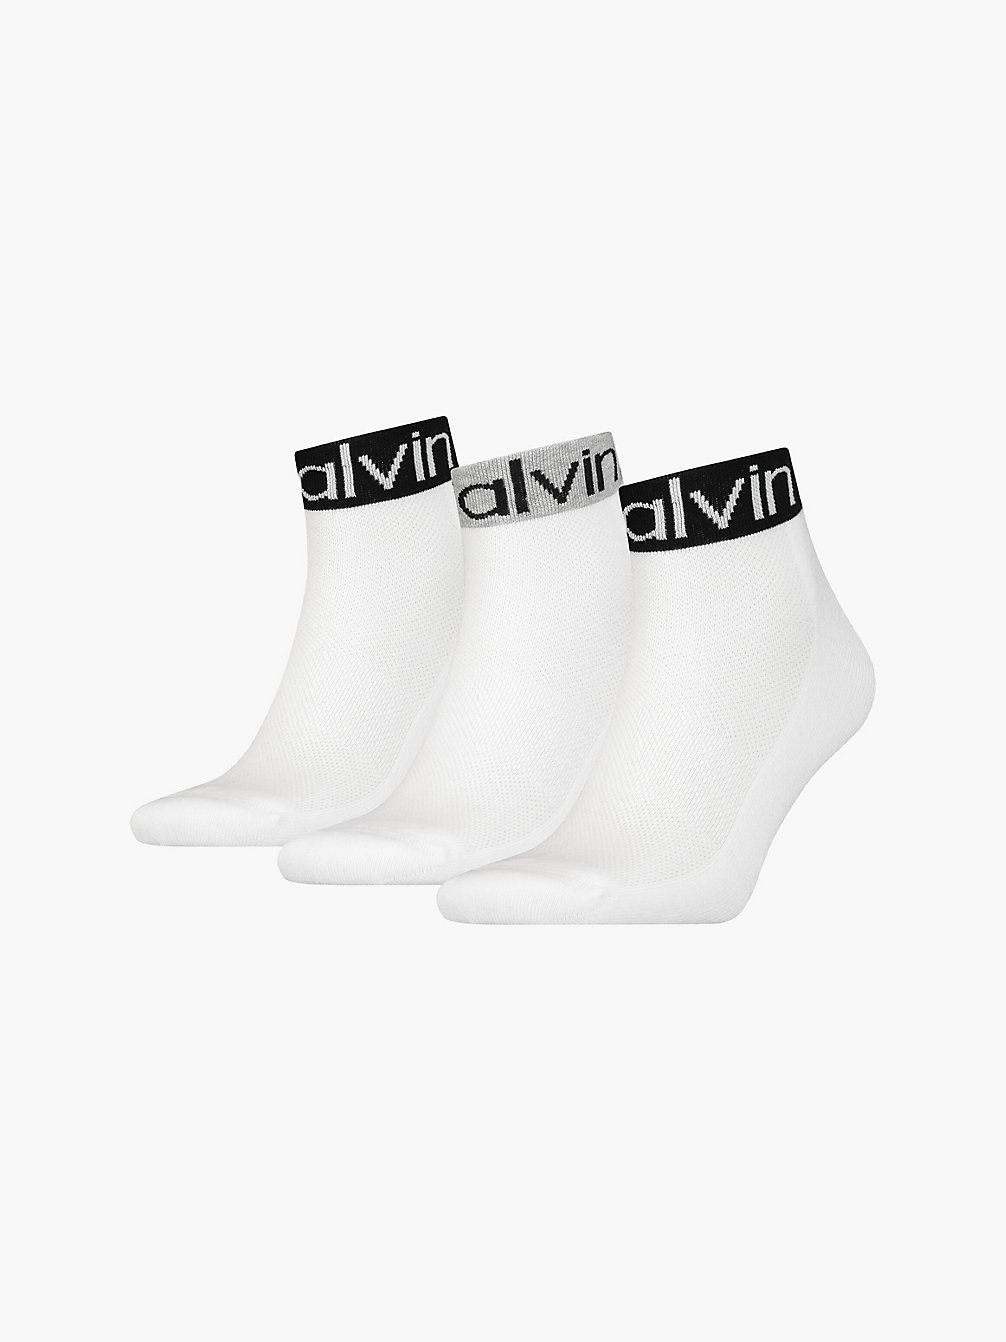 WHITE > Комплект носков длиной по щиколотку 3 пары > undefined женщины - Calvin Klein